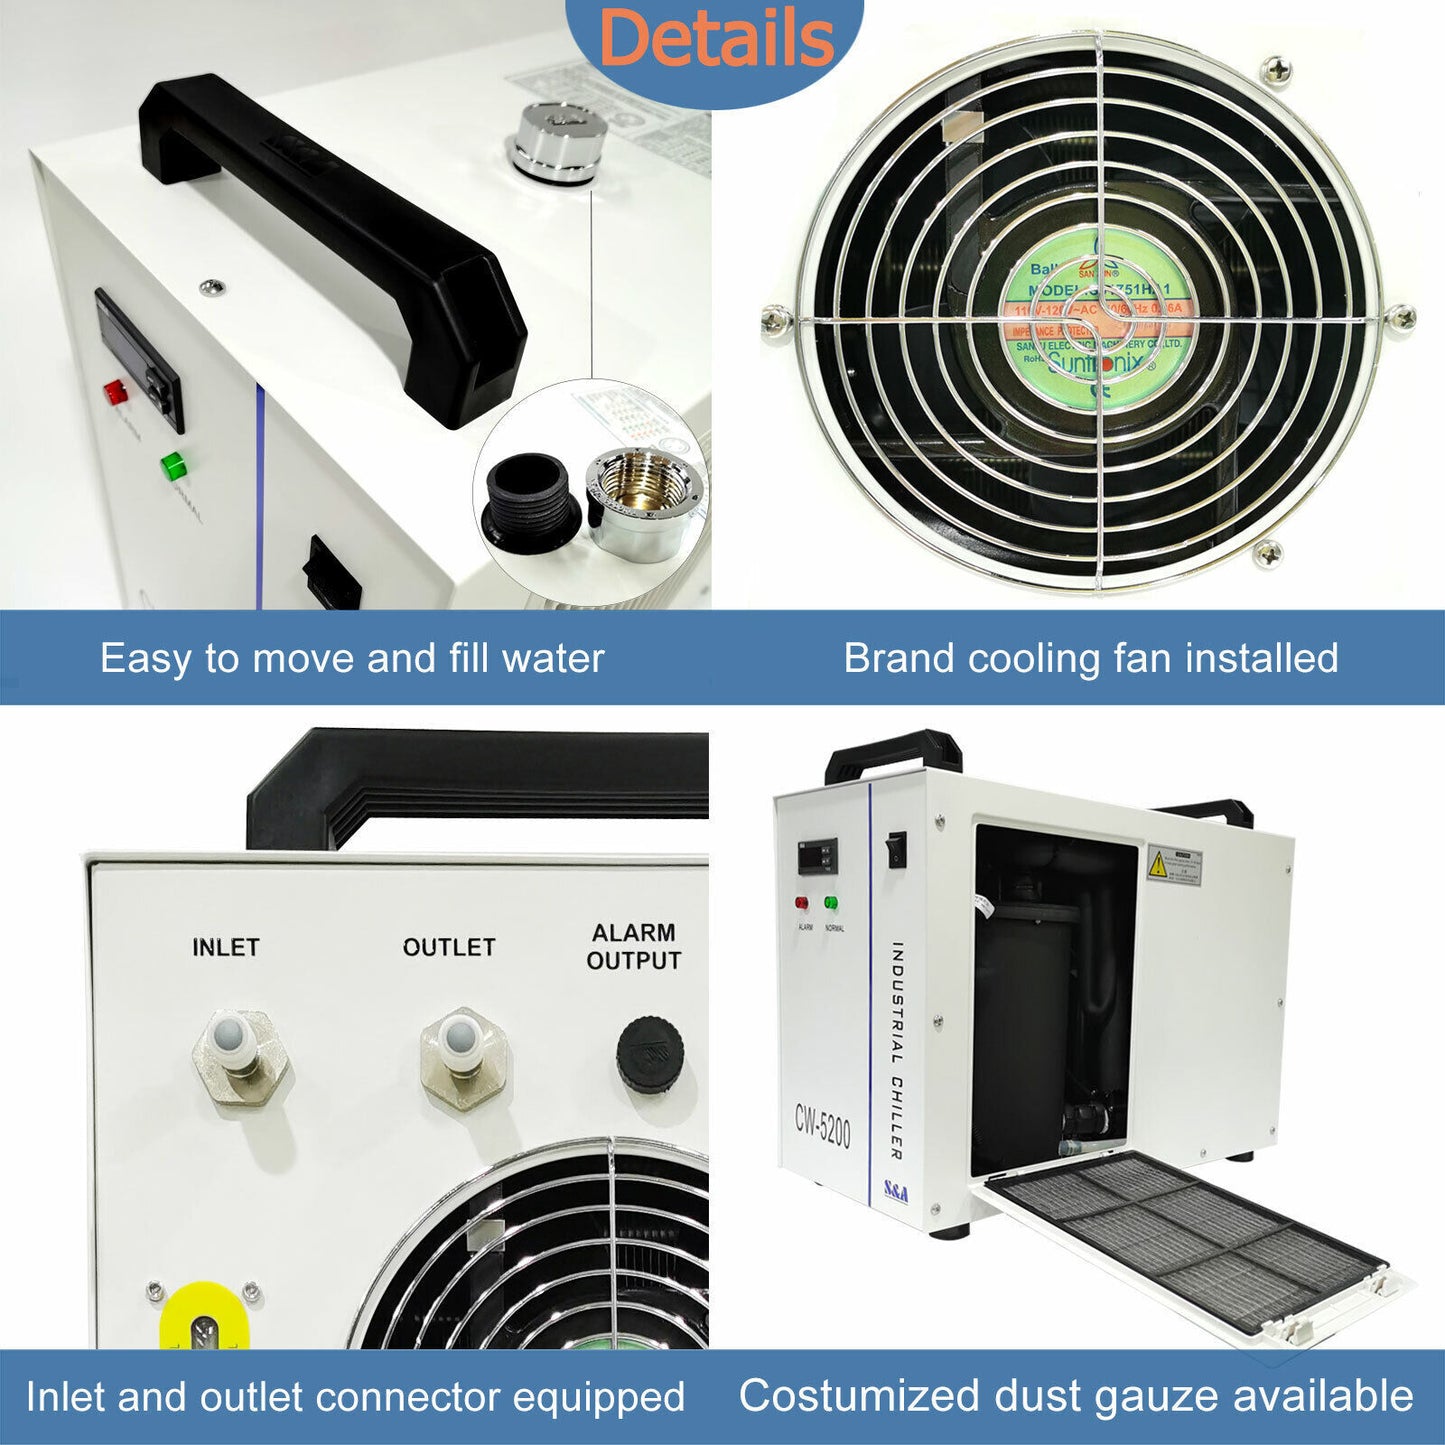 Wasserkühler & Chiller für 80W-150W CO2 Laser Cutter | CW-5200